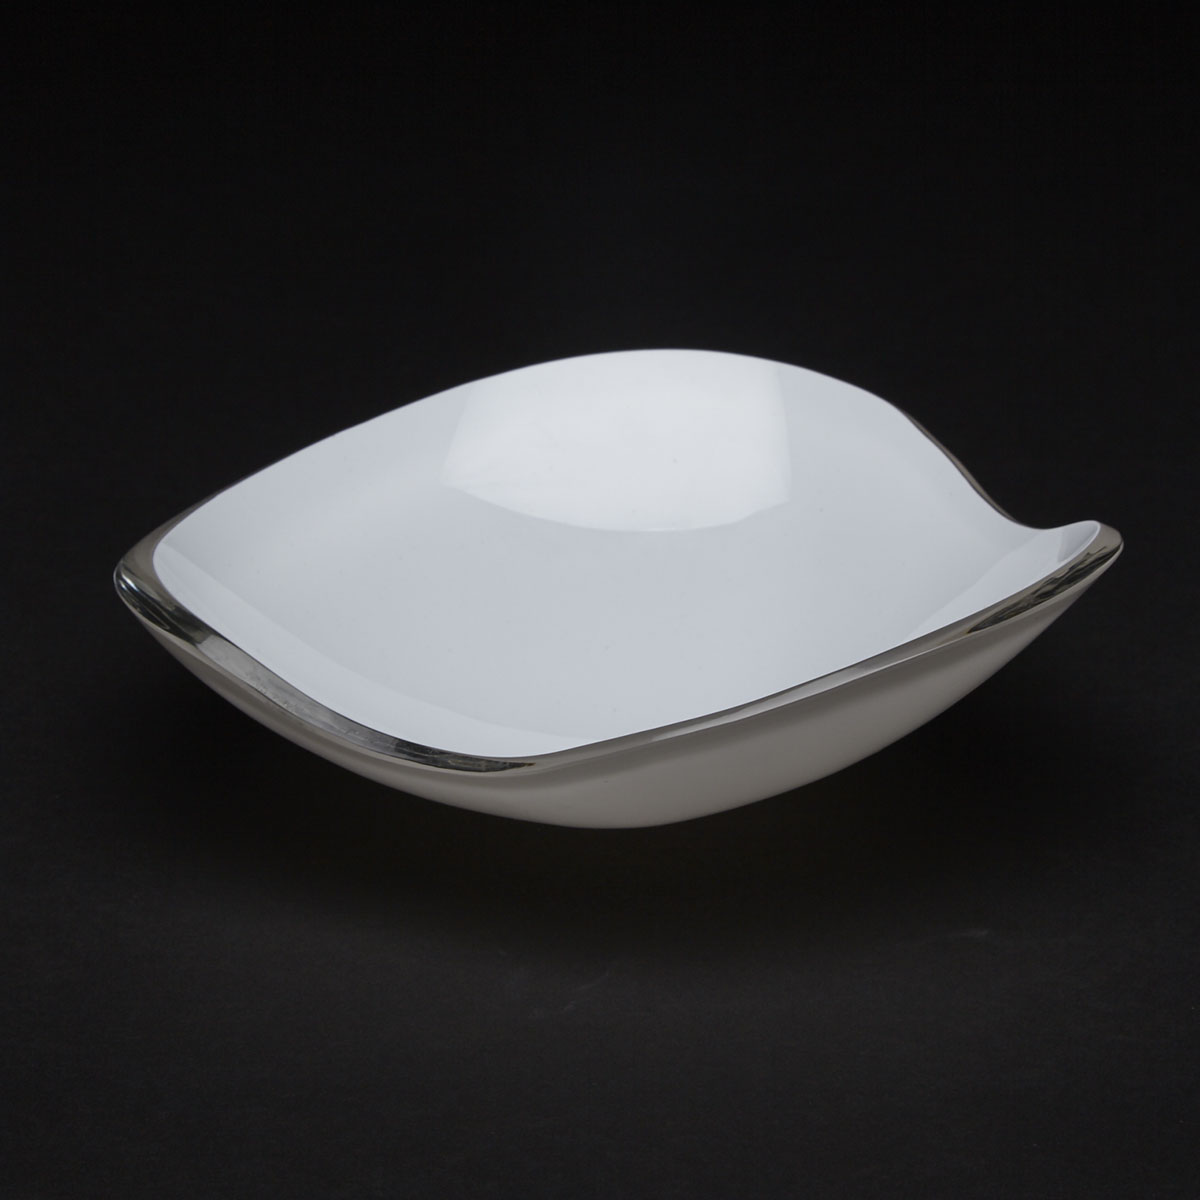 Iittala ‘Munankuori’ (Egg-Shell) Glass Bowl, Gunnel Nyman, designed 1947